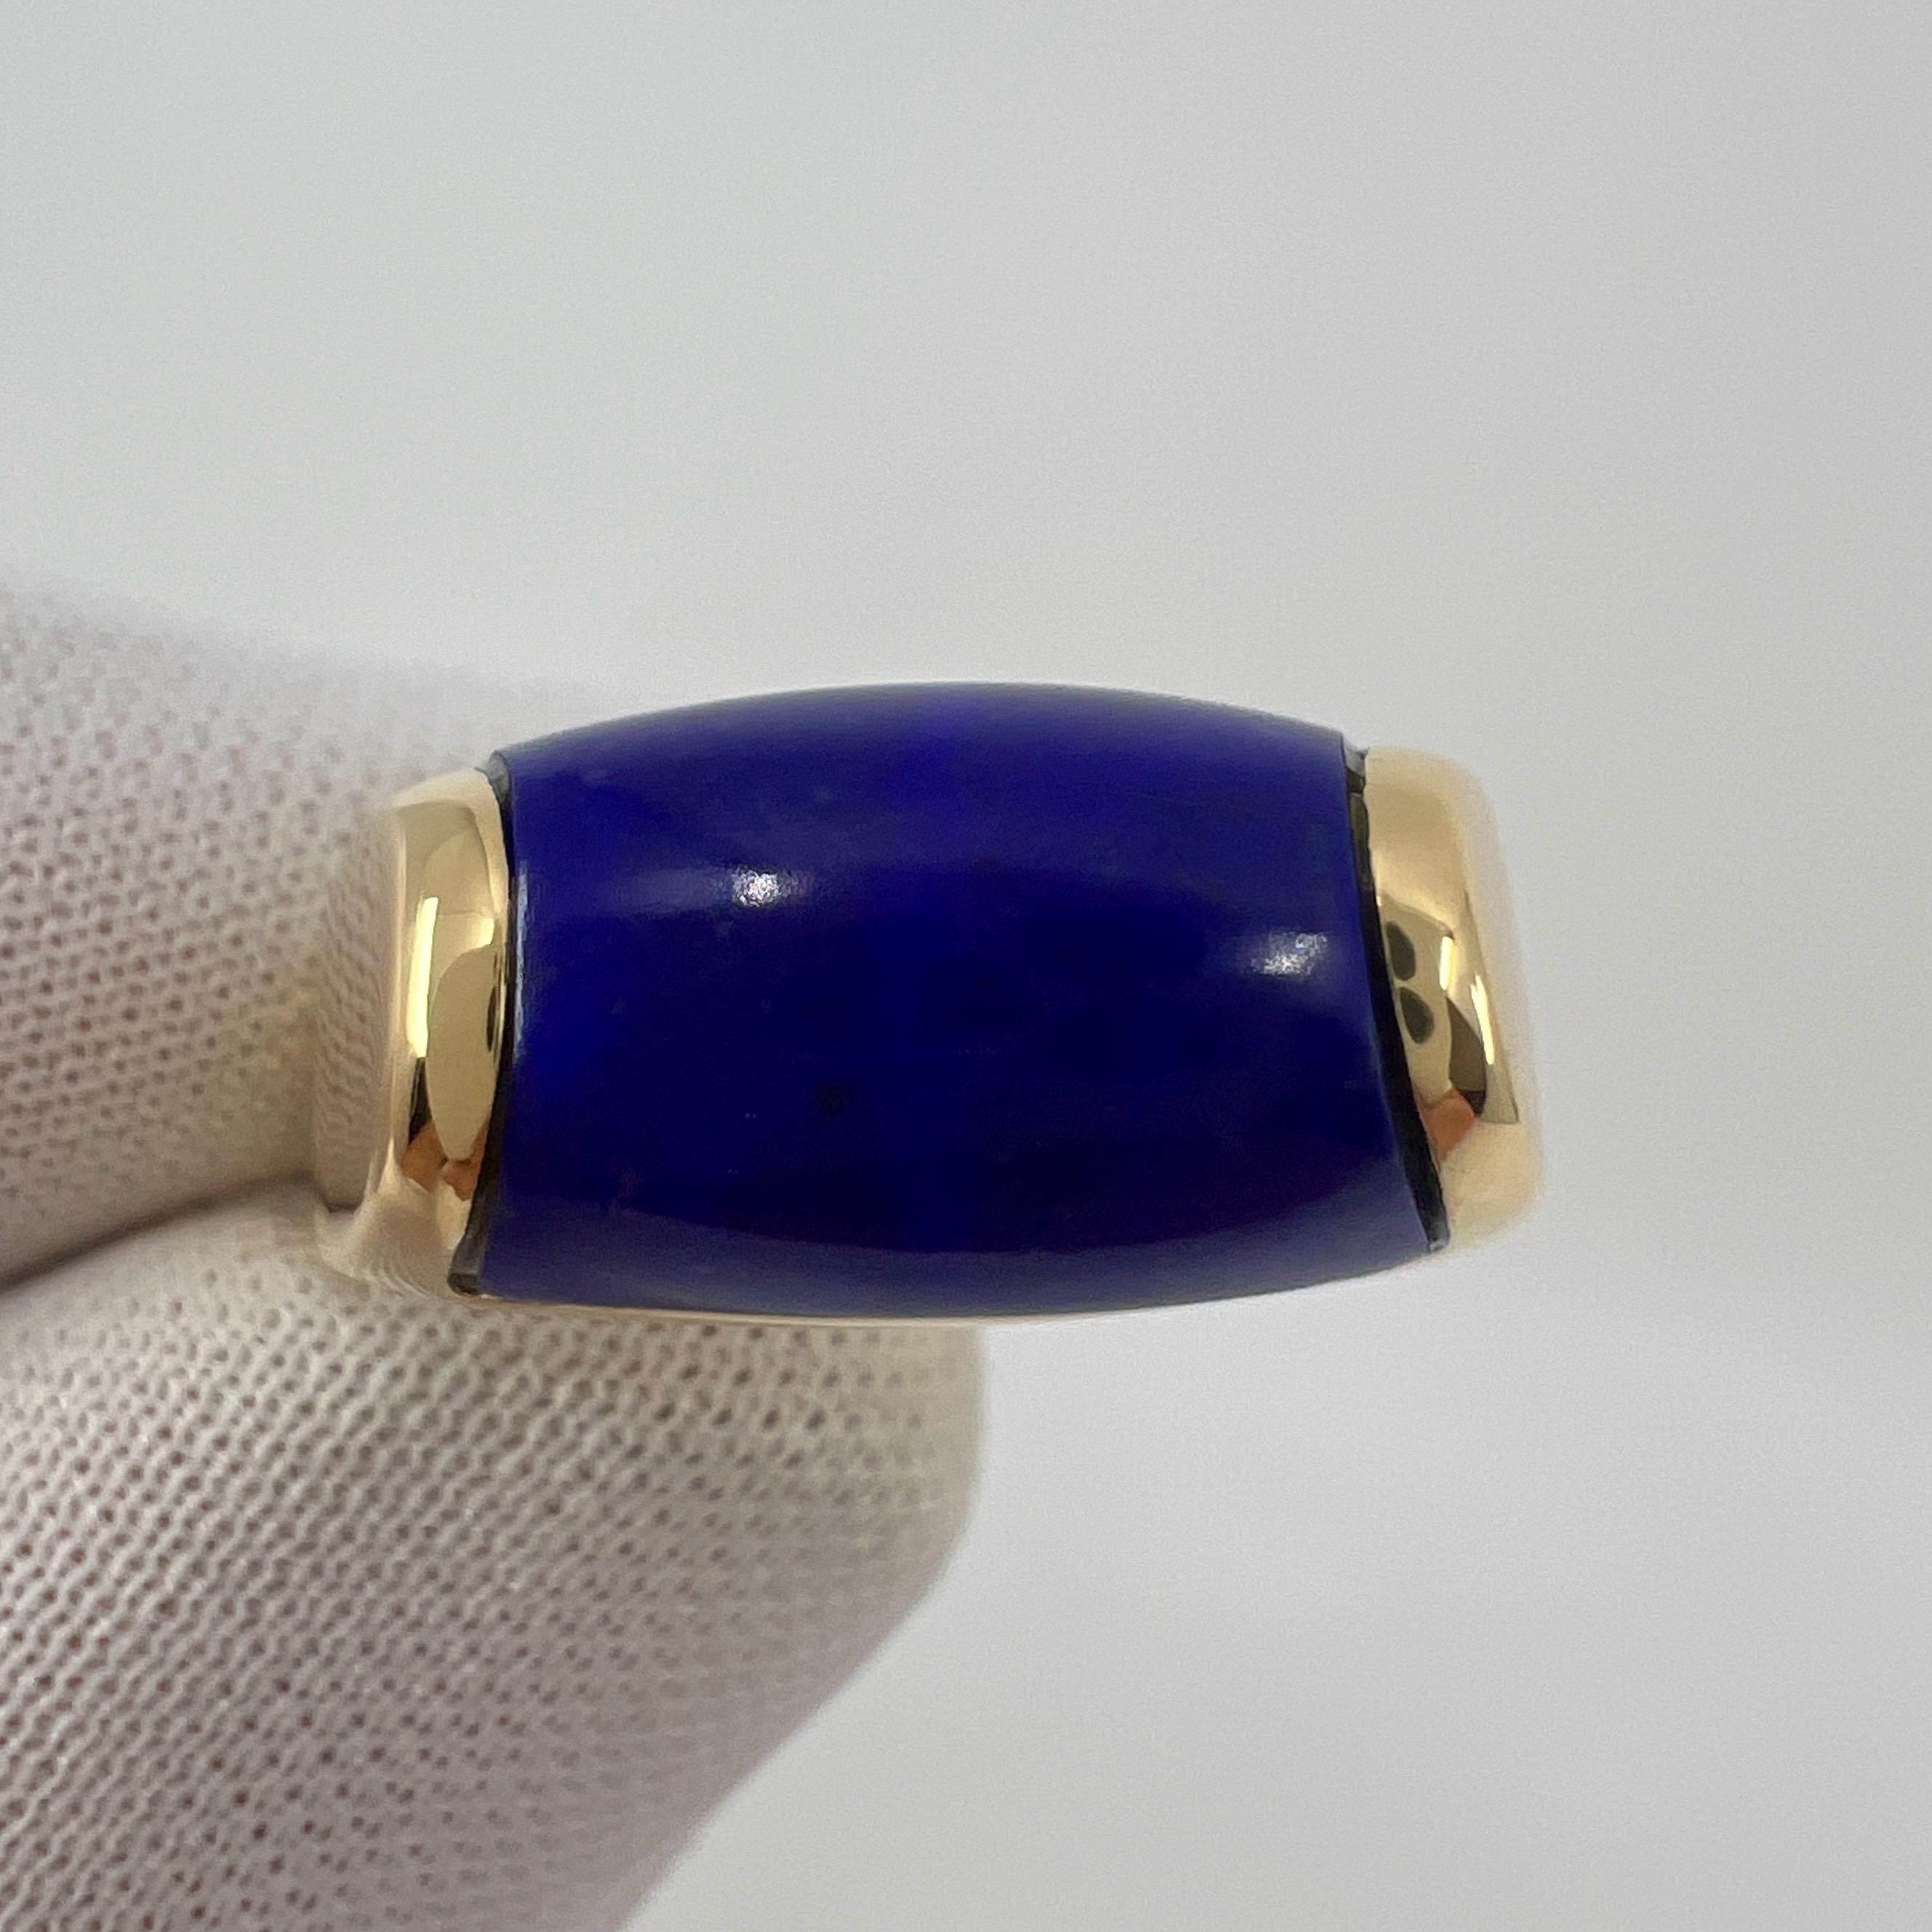 Bvlgari Bulgari Tronchetto 18k Yellow Gold Lapis Lazuli Ring with Box US6 EU52 For Sale 3